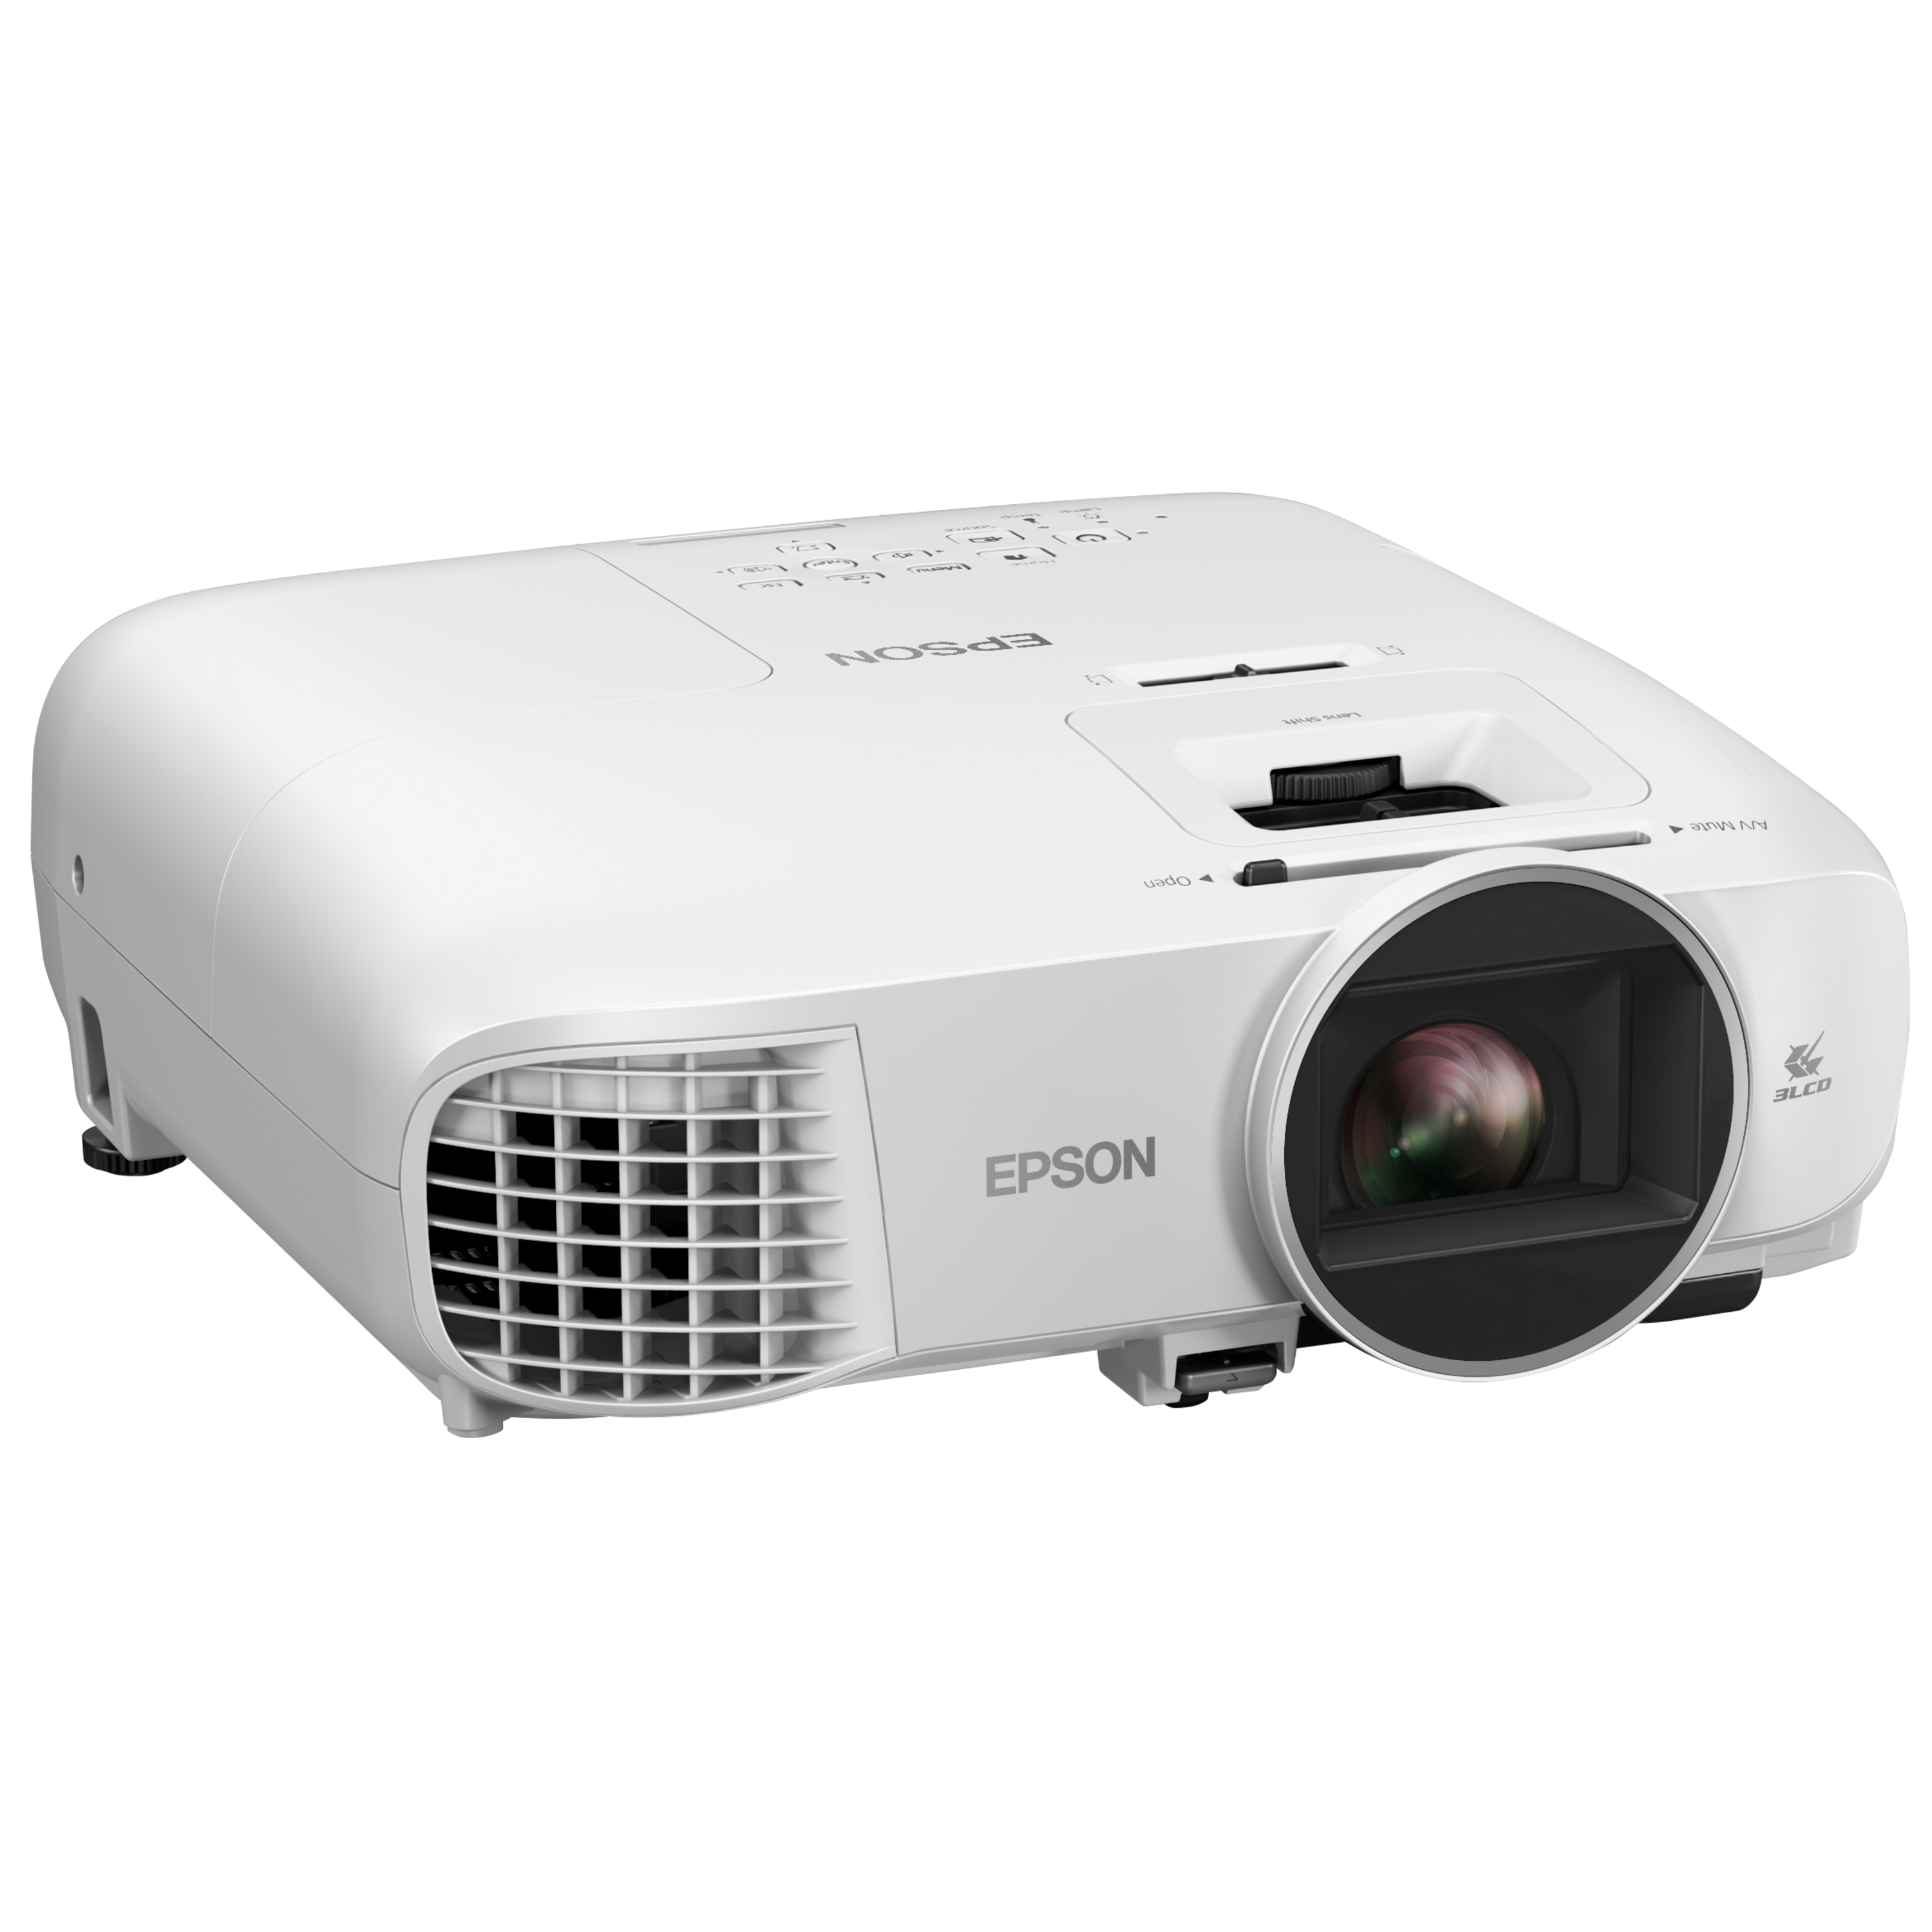 EPSON EH-TW5600 Full HD-Heimkino-Projektor, 1080p, Lens-Shift-Funktion, für 3D- und 2D-Inhalte, 1,6-fach-Zoom, HDMI, VGA, USB